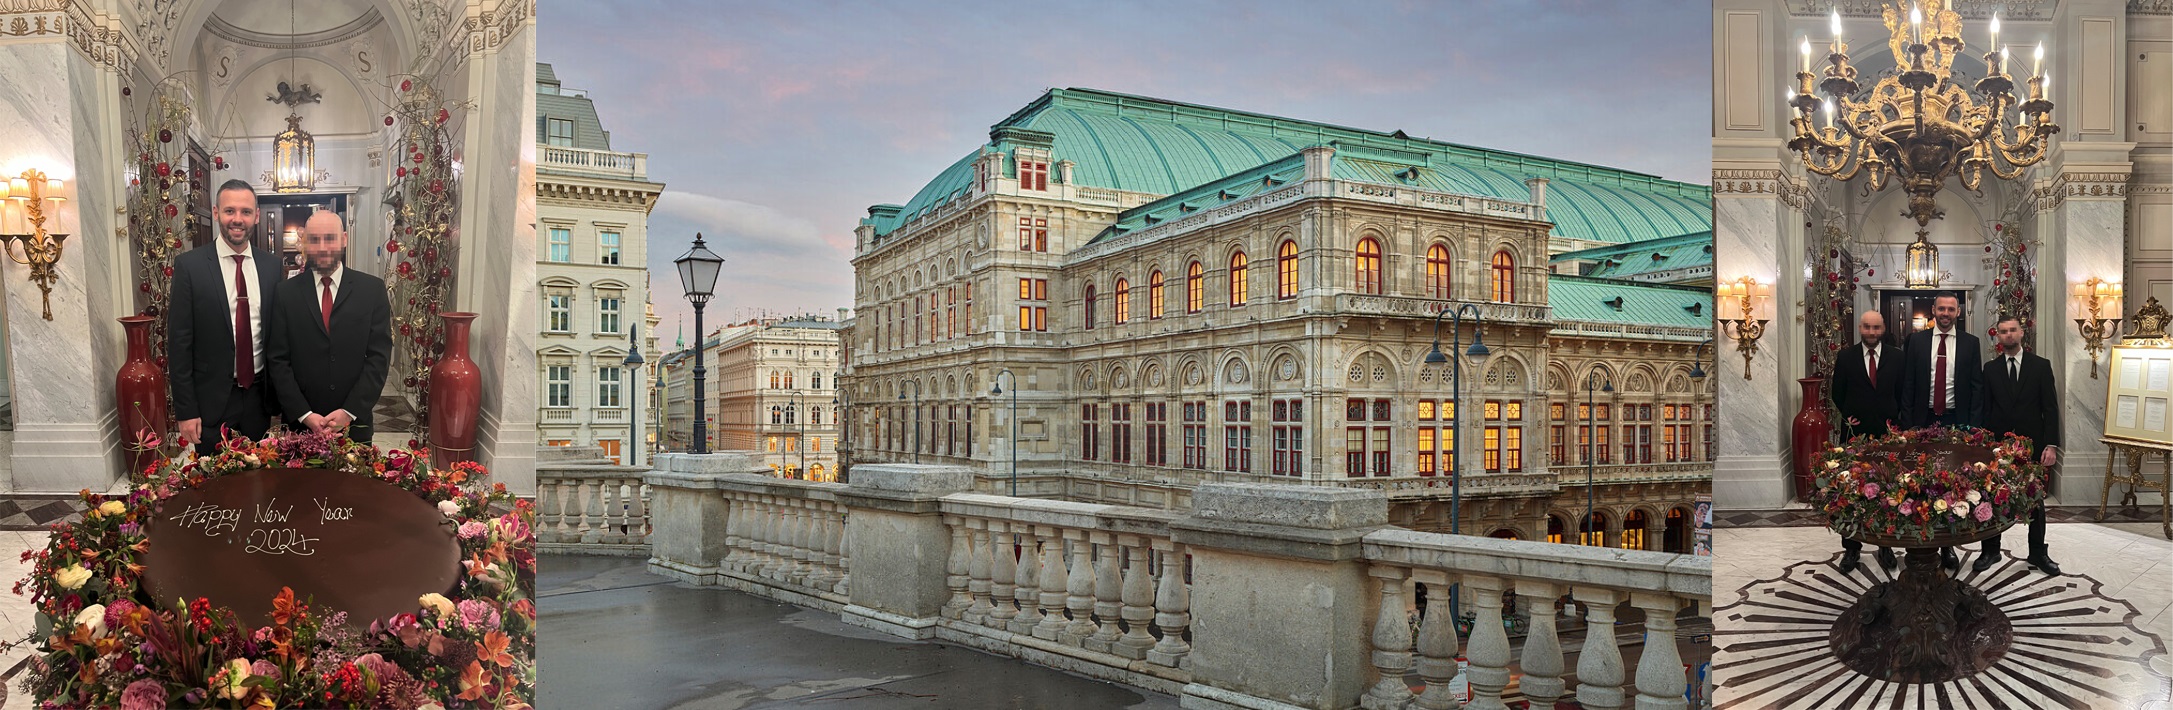 Sicherheitsteam - Hotelsecurity in Wien